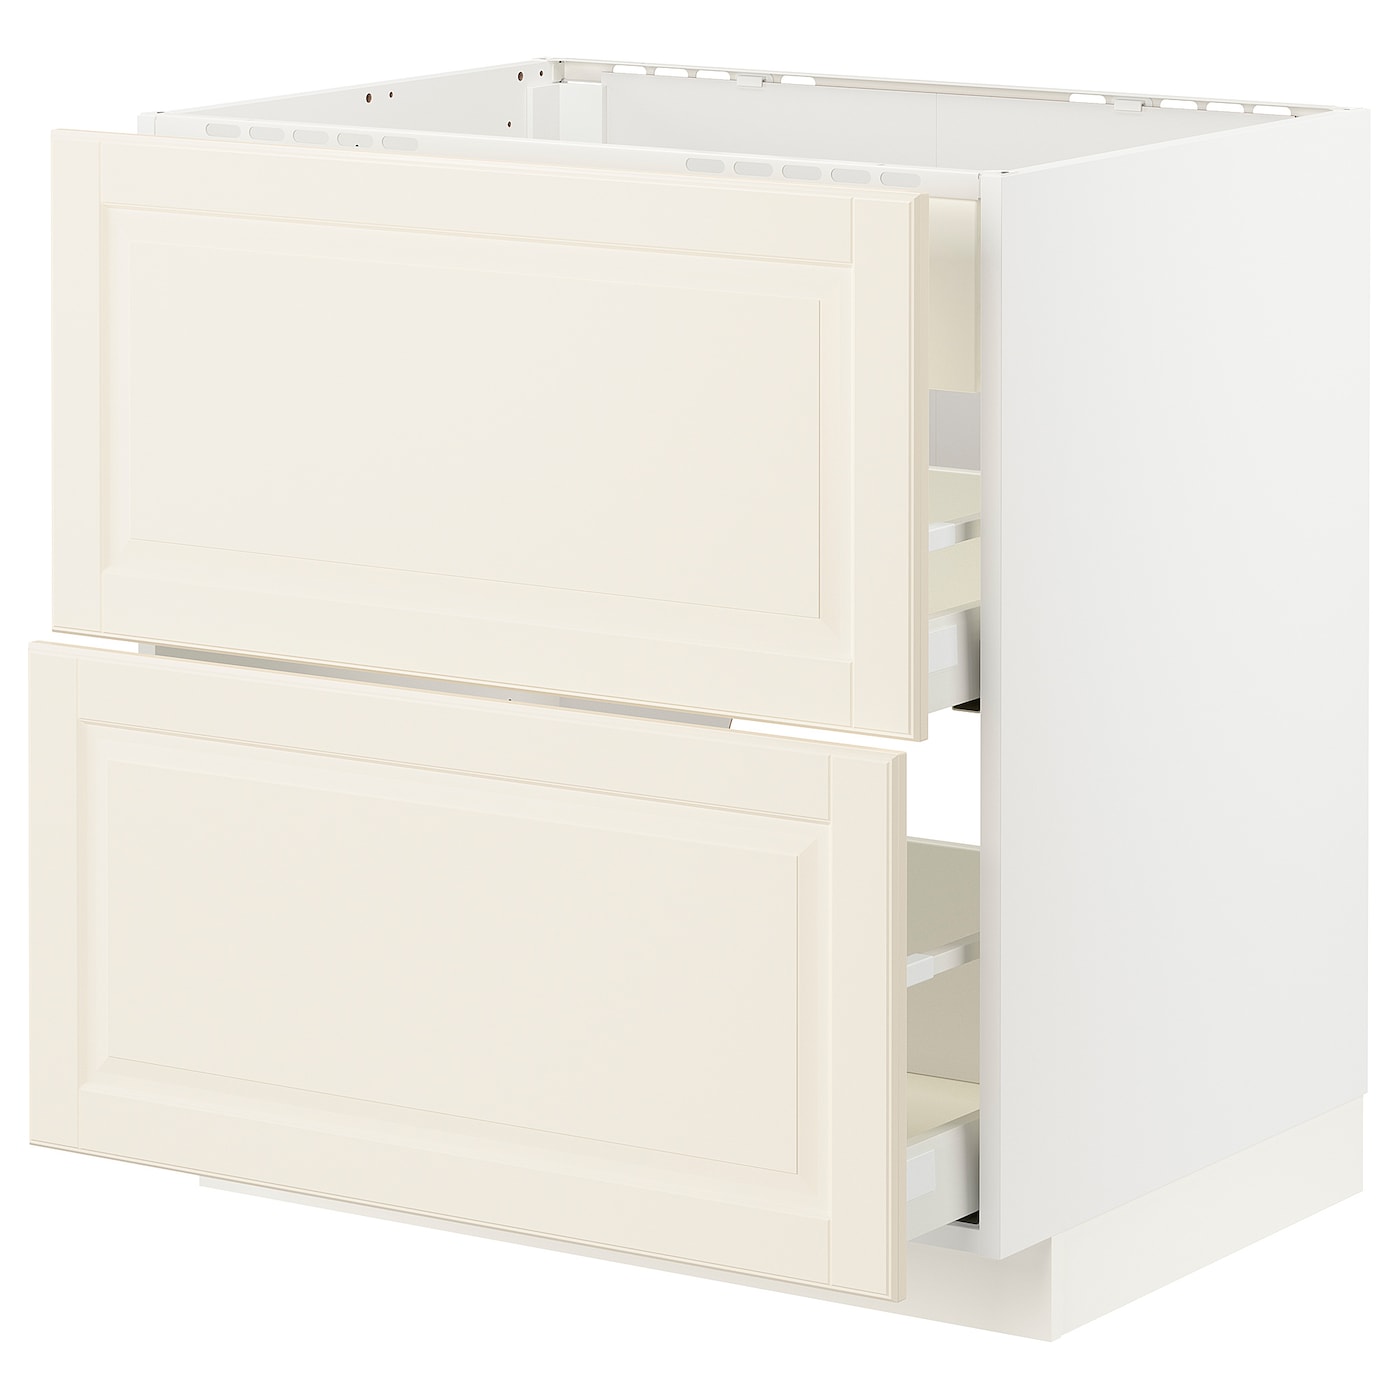 Напольный шкаф - METOD / MAXIMERA IKEA/ МЕТОД/ МАКСИМЕРА ИКЕА,  88х80 см, белый/светло-бежевый